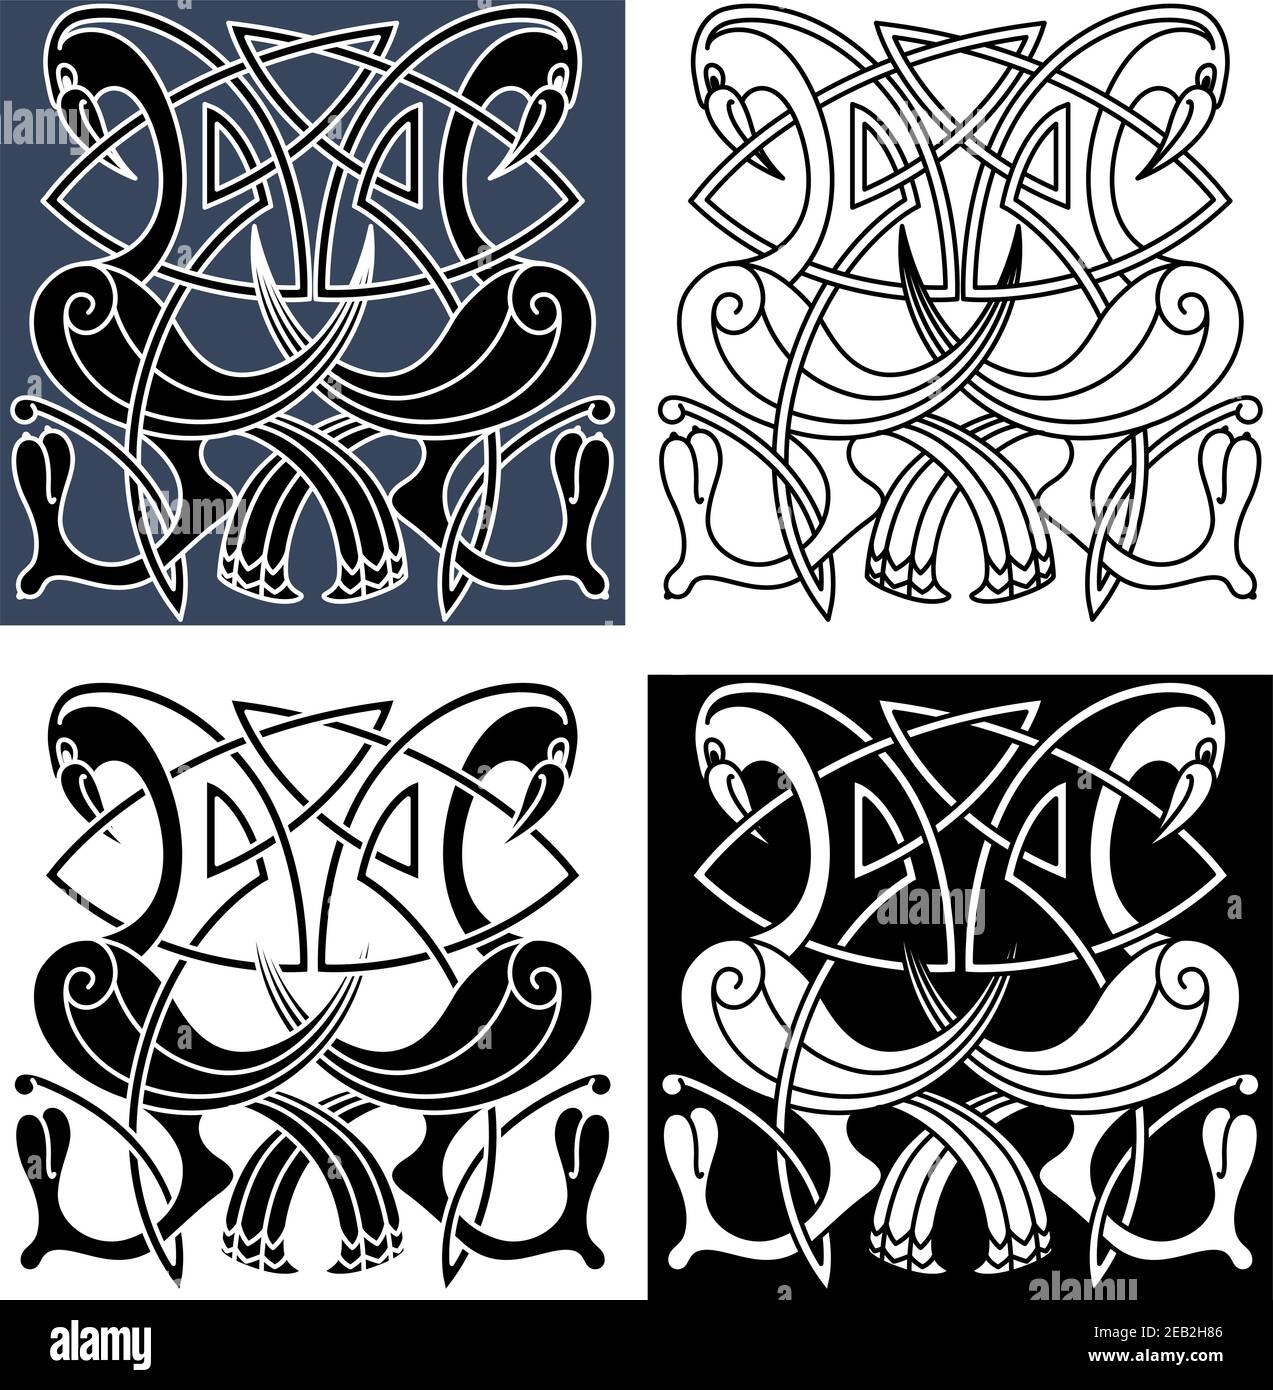 Zierreiher Vögel mit geschwungenen Schwänzen und Flügeln verziert mit traditionellen keltischen Knotenmustern, für Tattoo oder mittelalterliche Verschönerung Design Stock Vektor